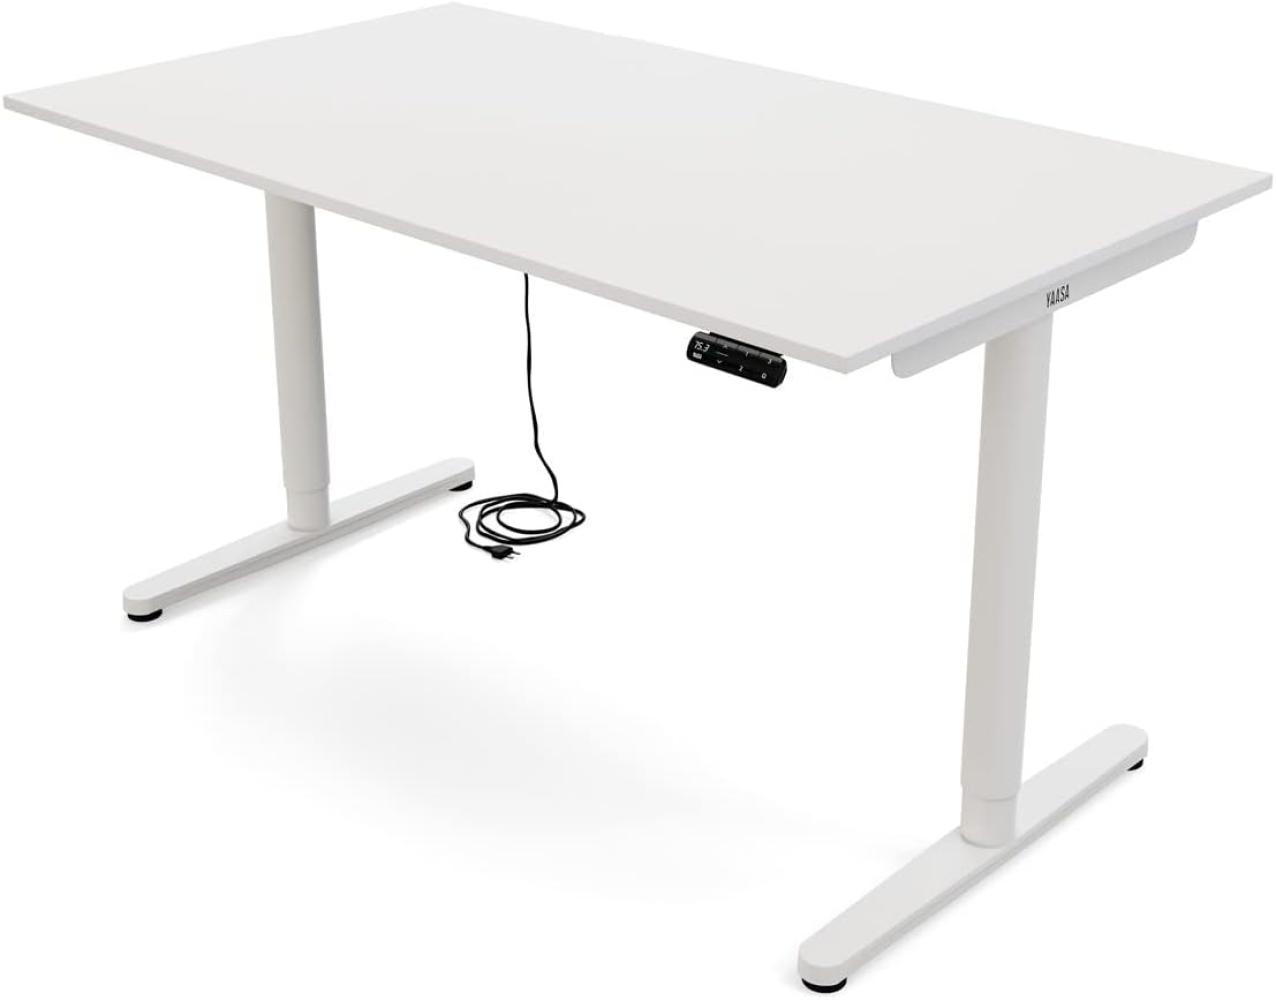 Yaasa Desk Essential Elektrisch Höhenverstellbarer Schreibtisch, 140 x 80 cm, Weiß Bild 1